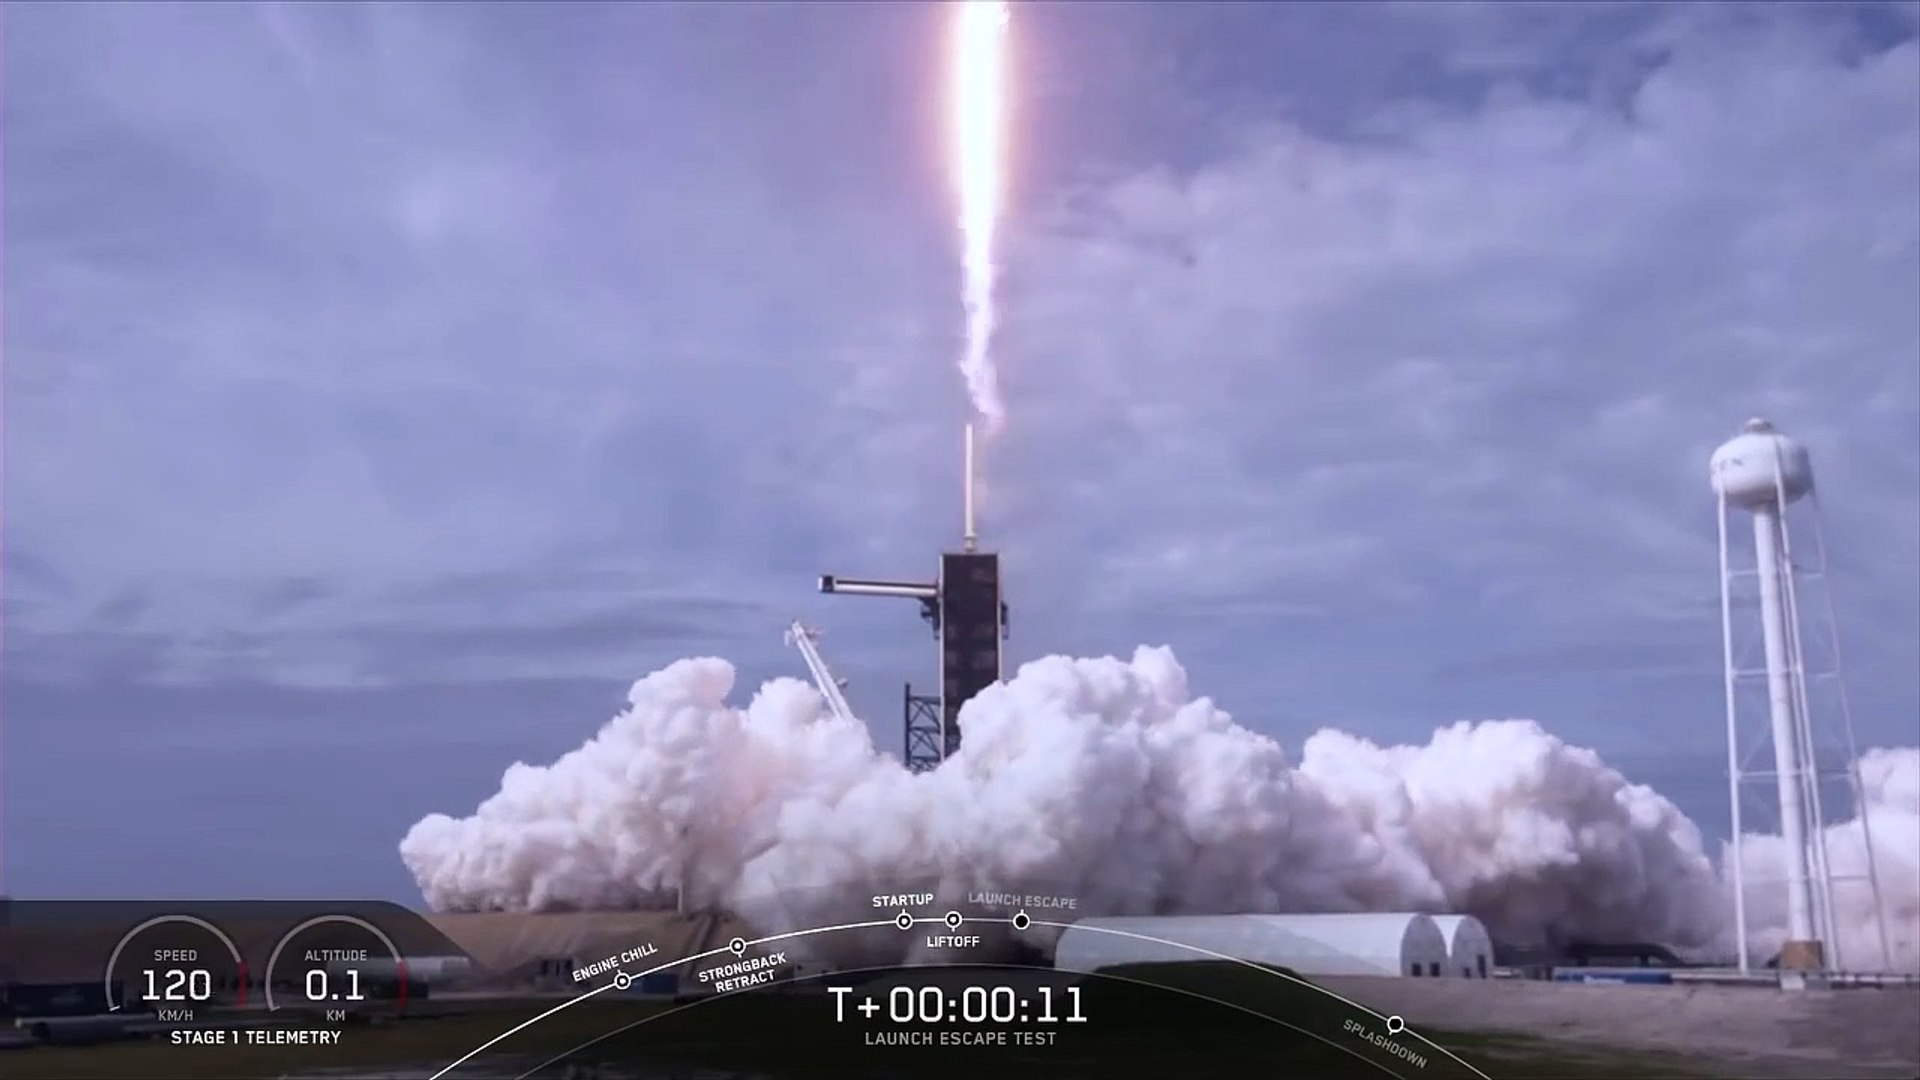 SpaceX In-Flight Abort Test